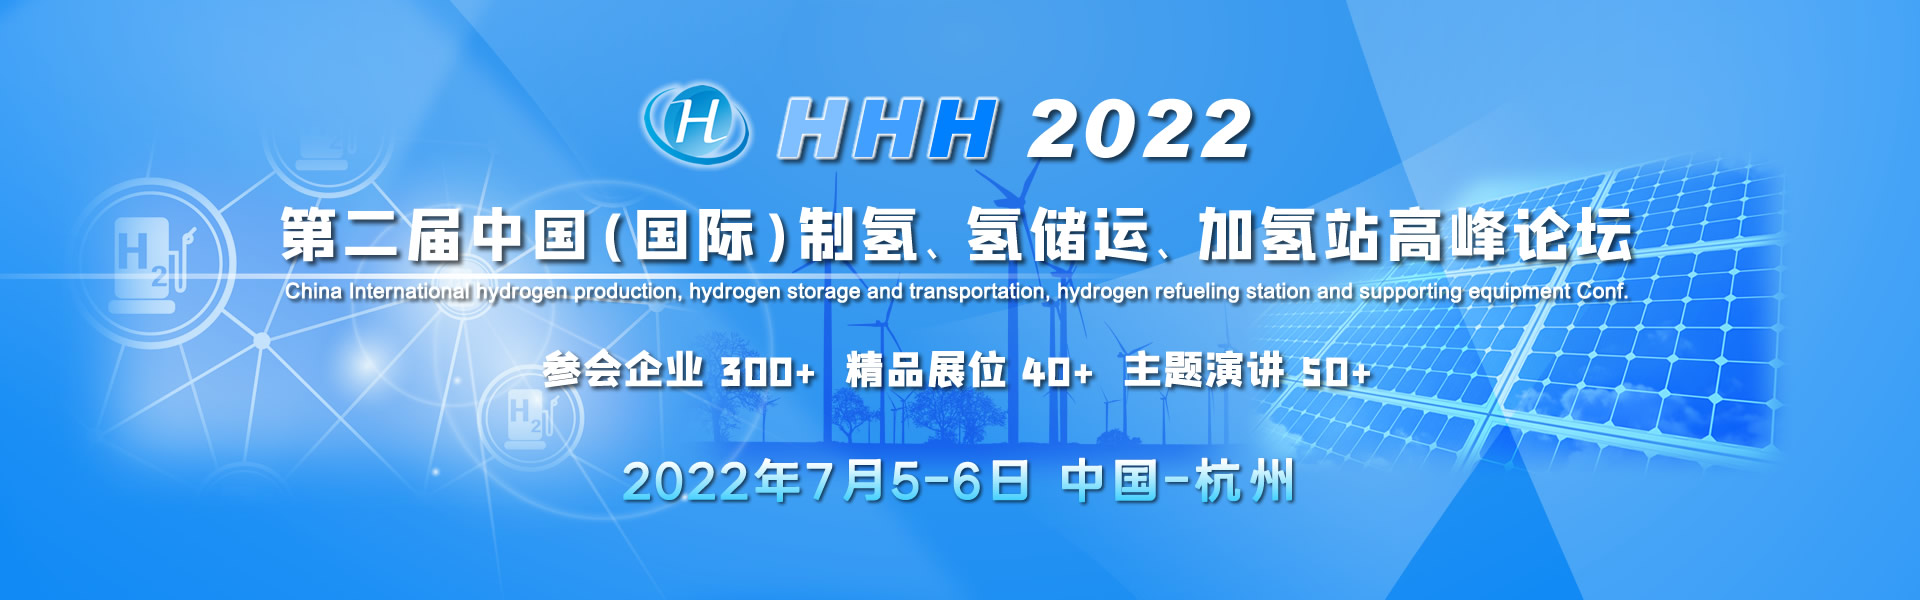 HHH2022 第二屆中國（國際）制氫、氫儲運、加氫站及配套設備大會 China hydrogen production, hydrogen storage and transportation, h